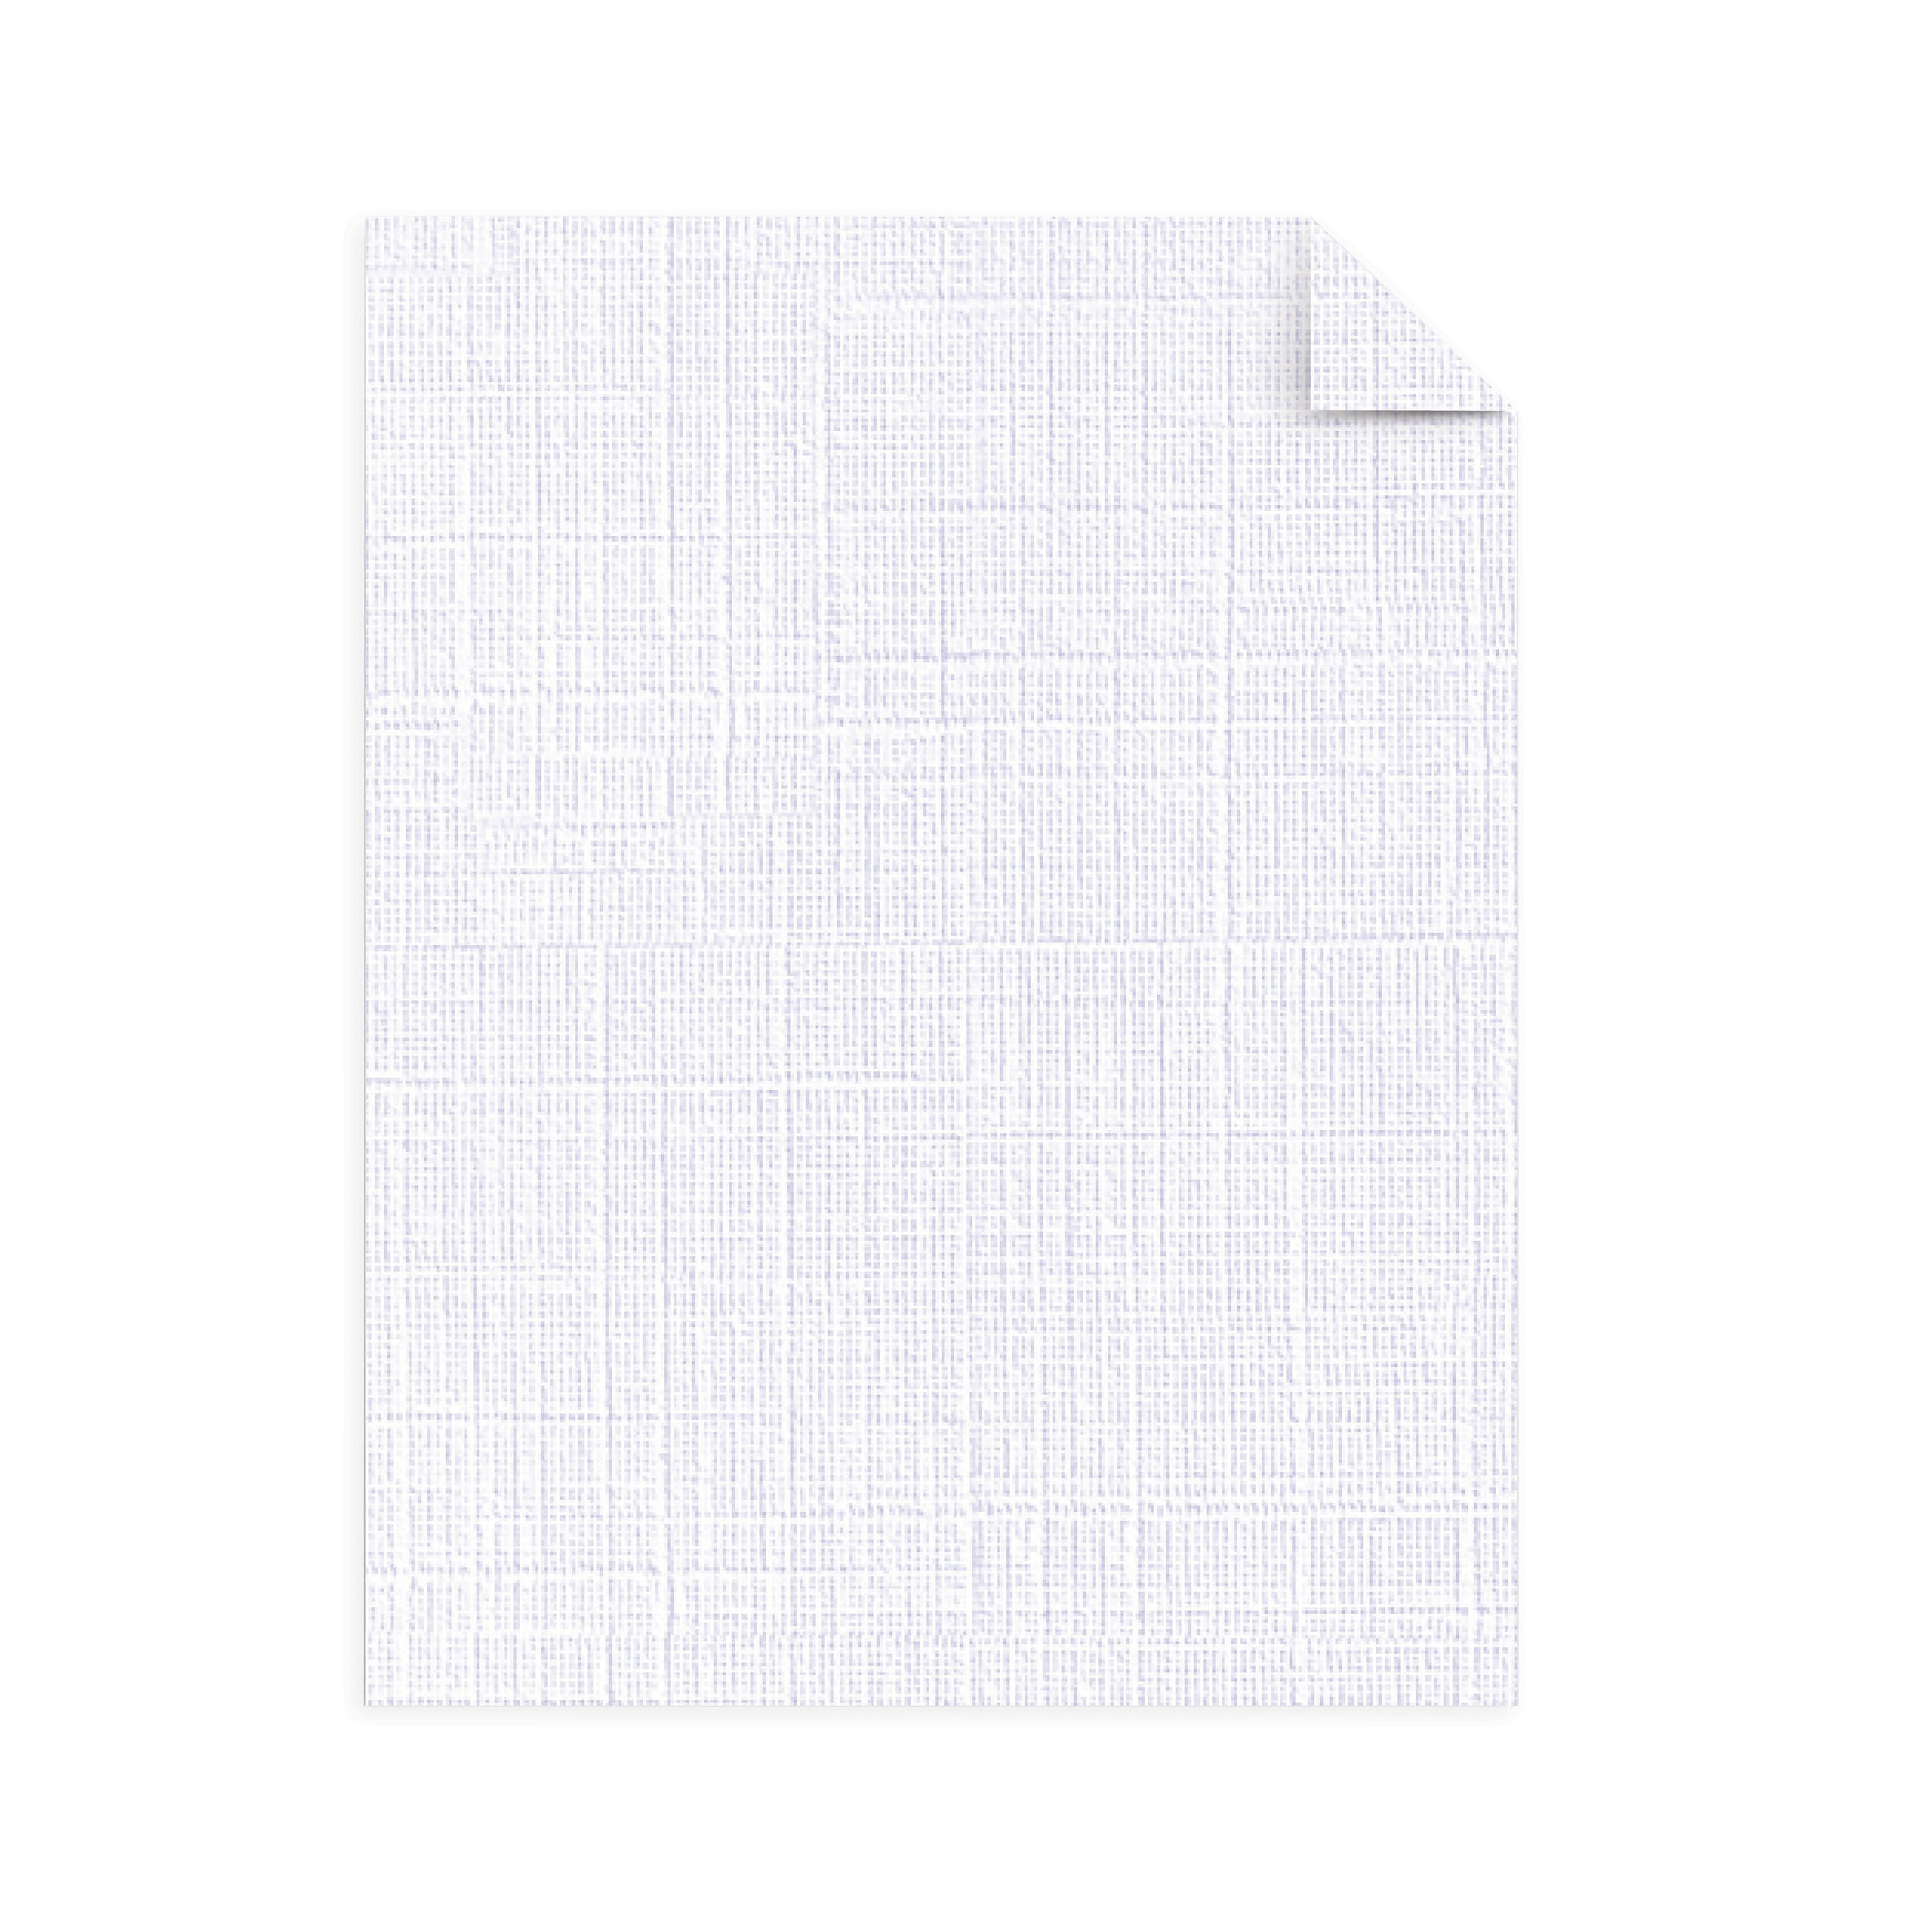 Southworth 100% Cotton Résumé Paper, 8.5 x 11, 32lb, Wove Finish, Ivory,  25 Sheets for Sale in Biscayne Park, FL - OfferUp